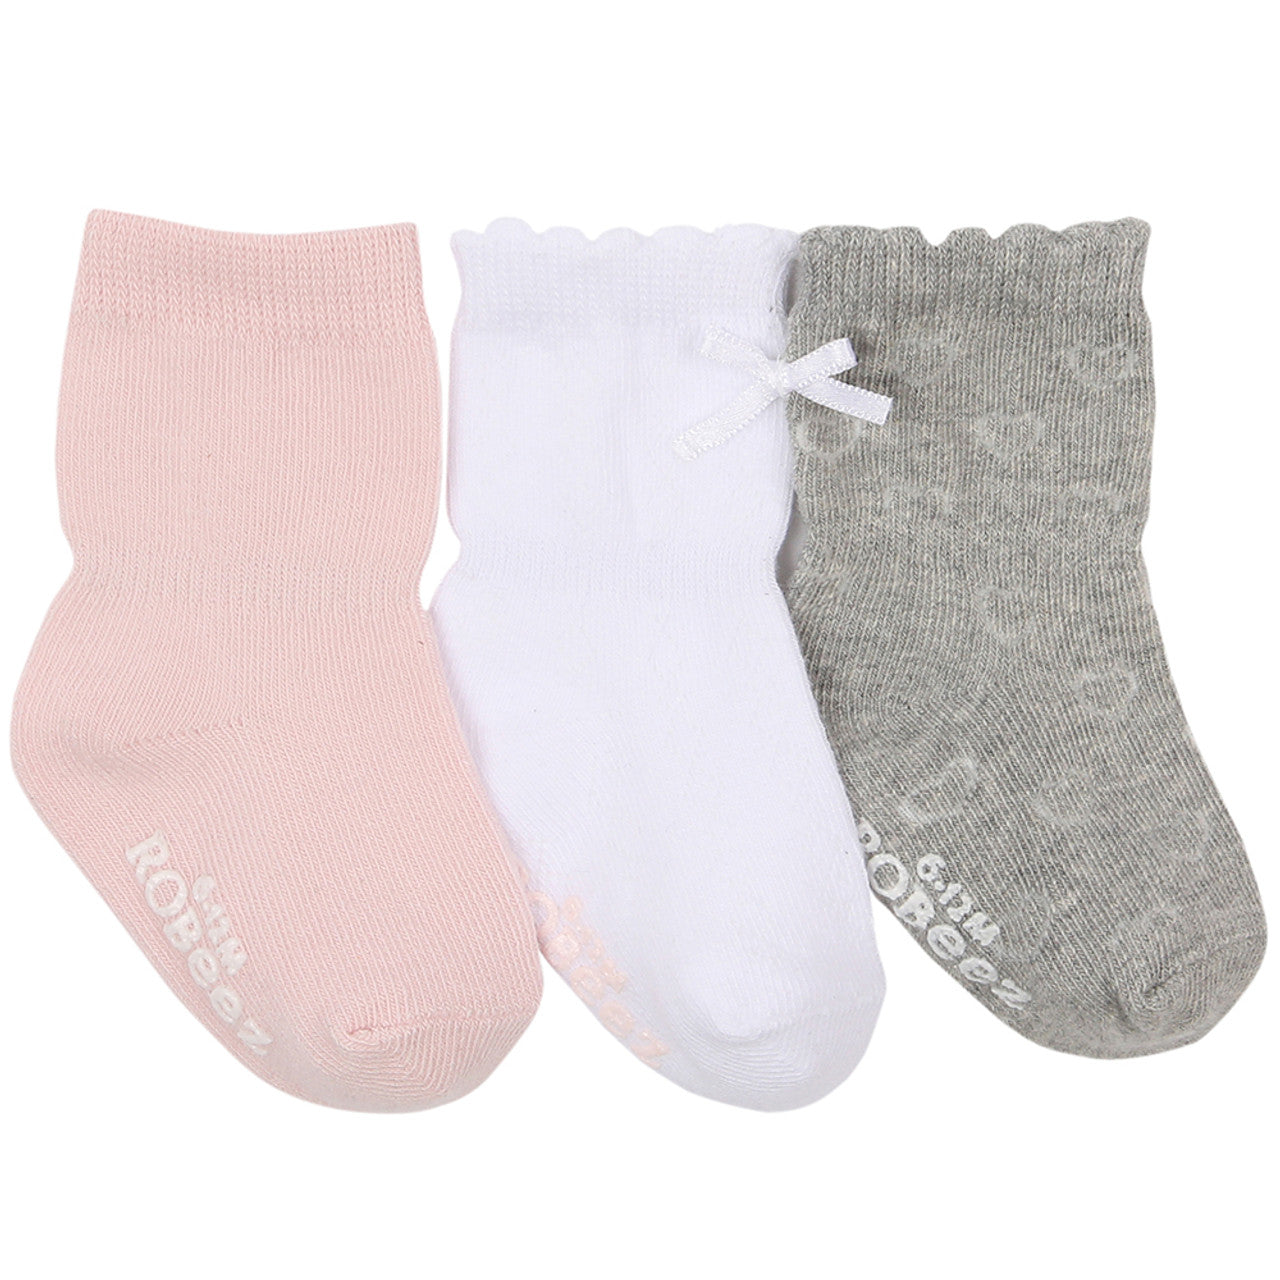 Girly Girl Socks - 3 Pack | White/Pink/Grey